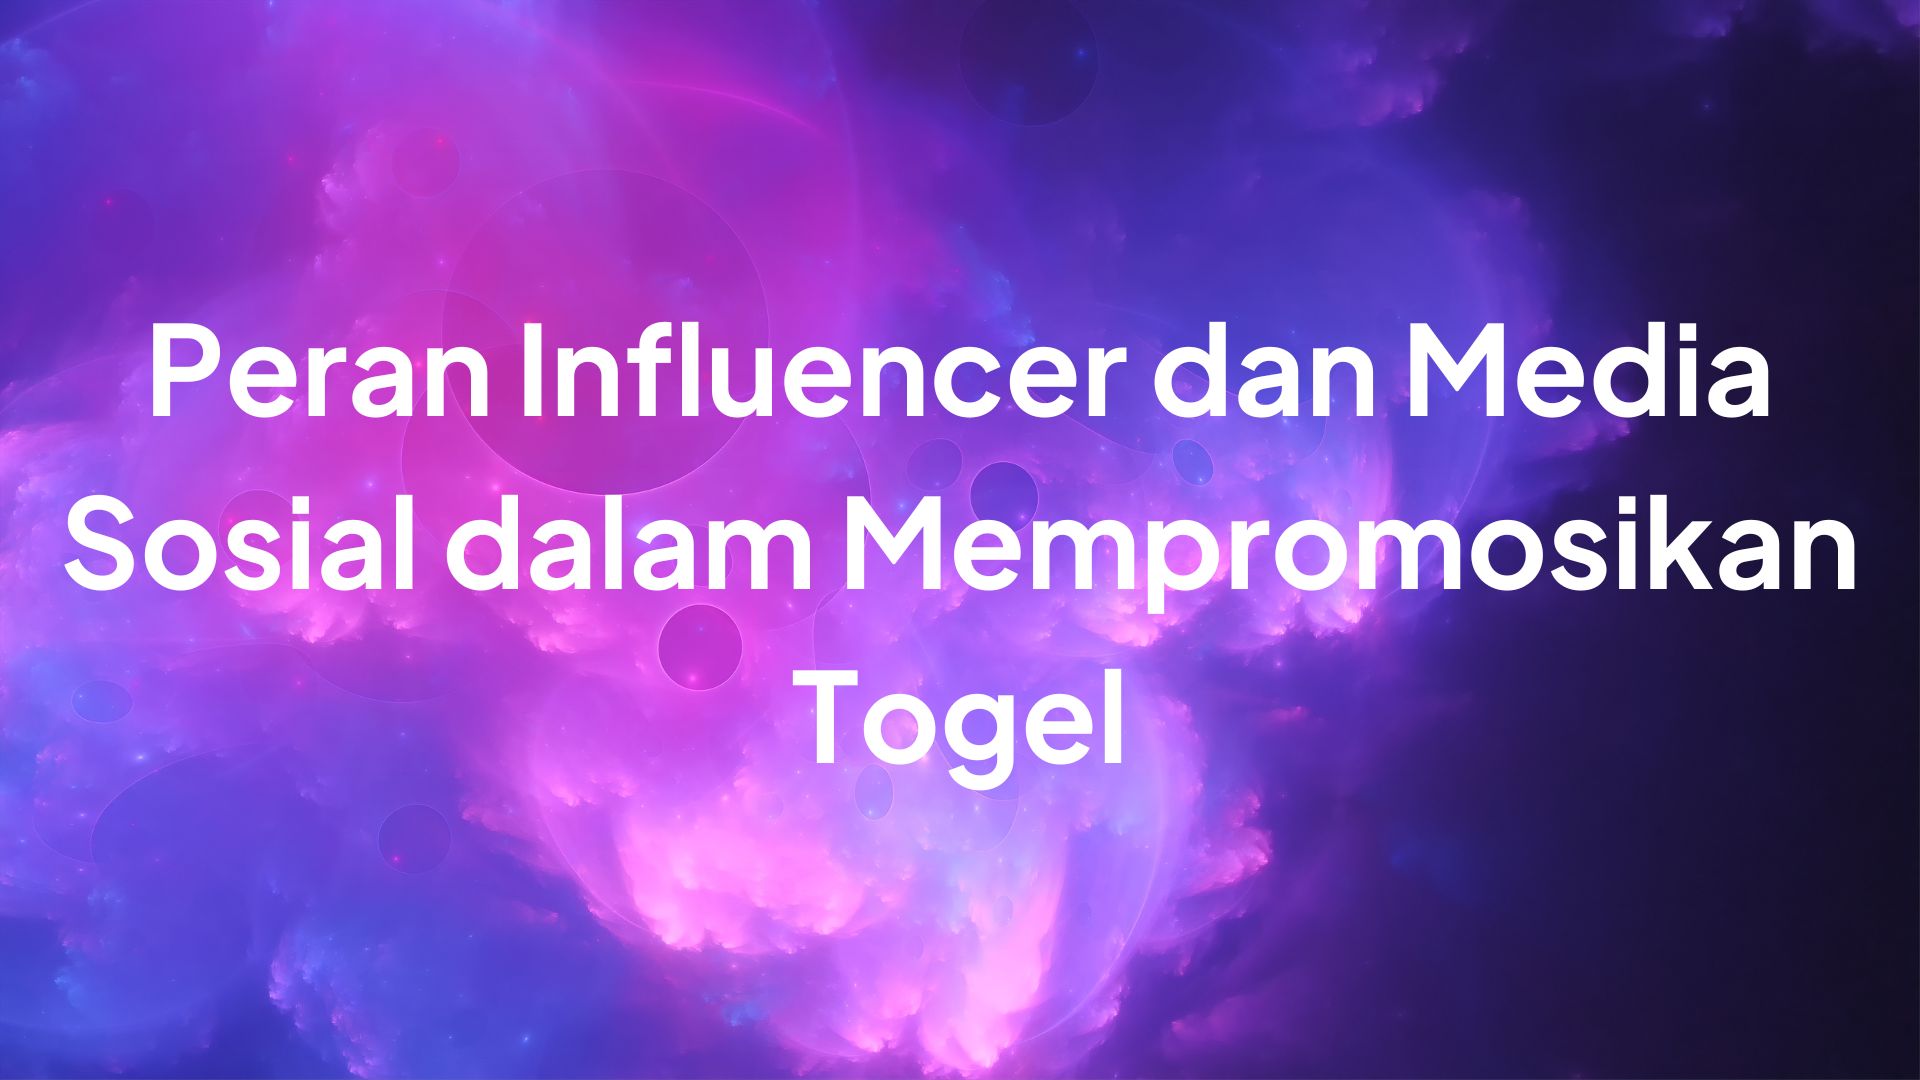 Peran influencer dalam Togel